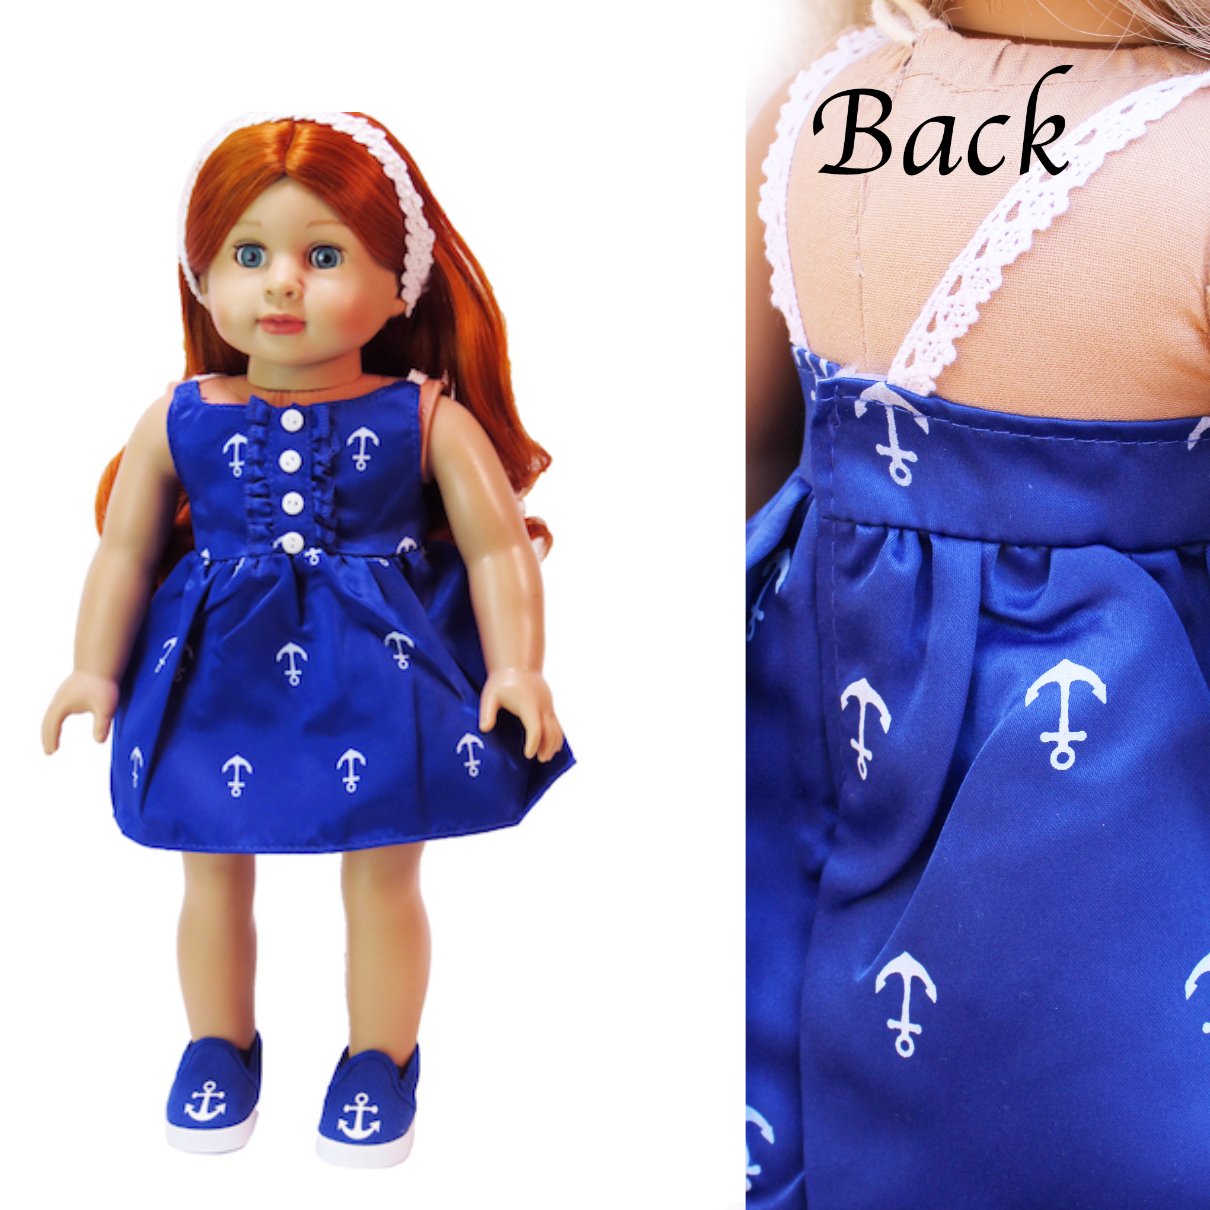 American Fashion World 18" doll royal blue anchor dress fits American Girl Dolls